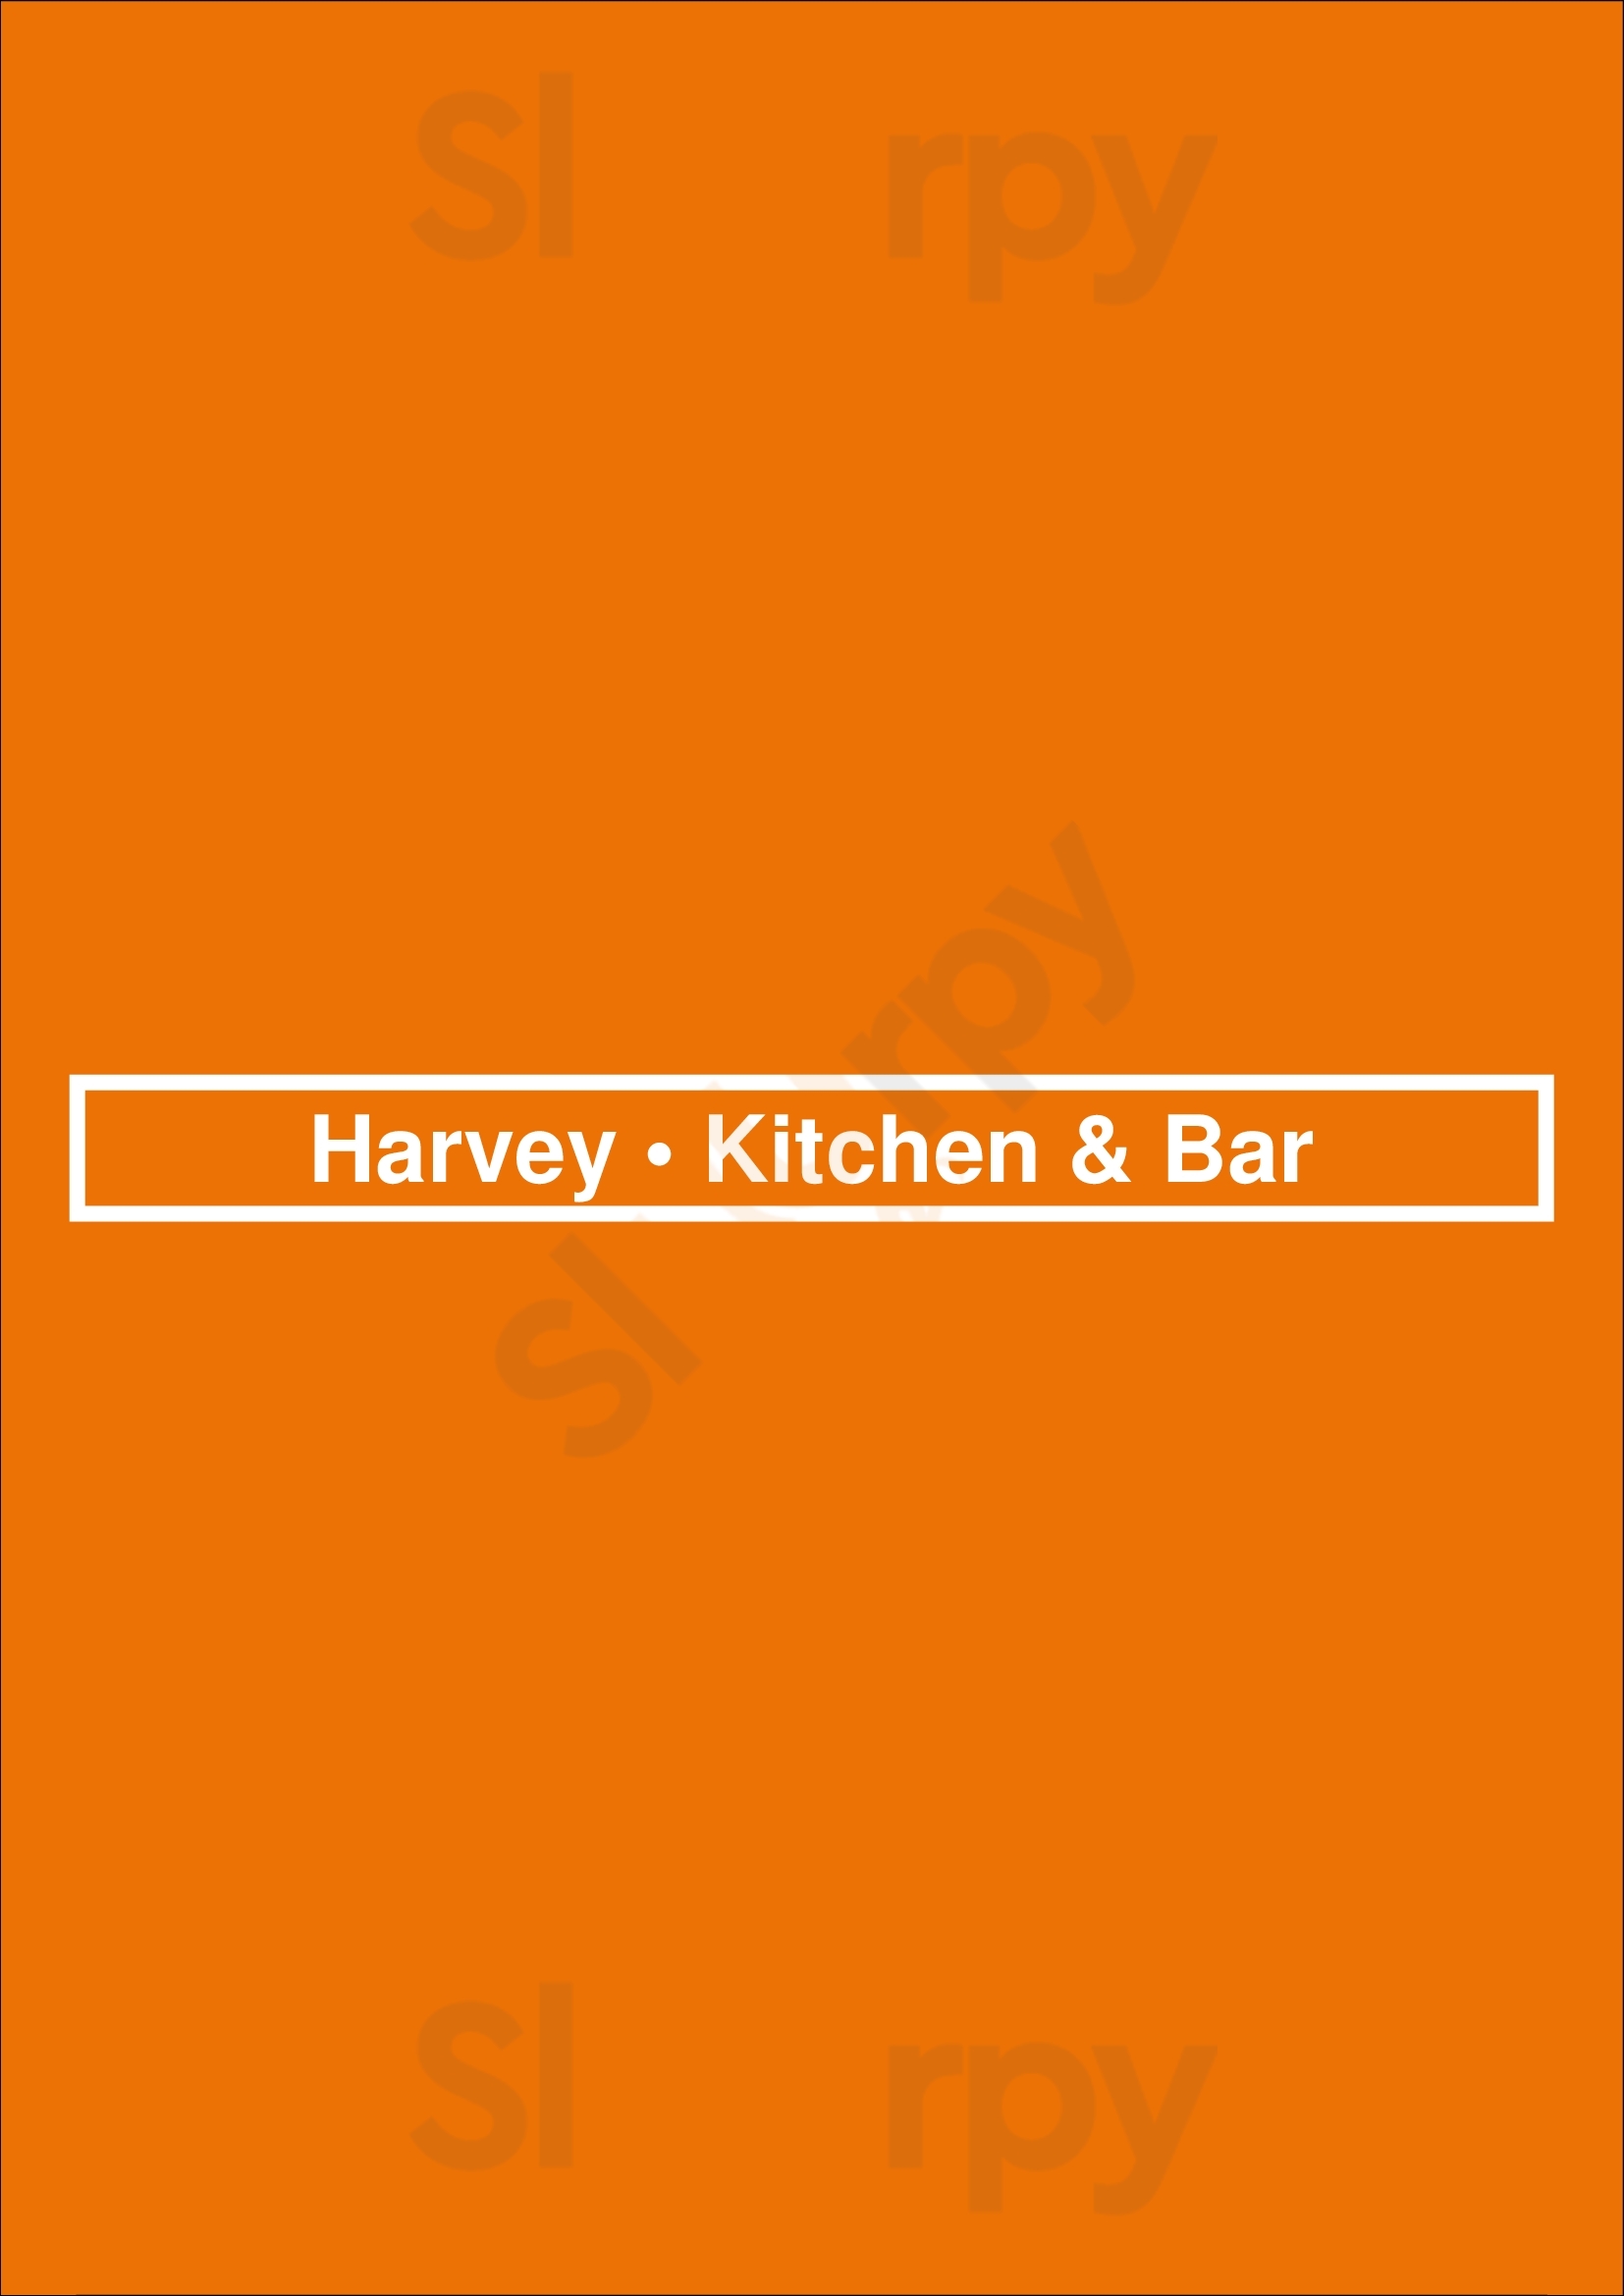 Harvey • Kitchen & Bar Maastricht Menu - 1